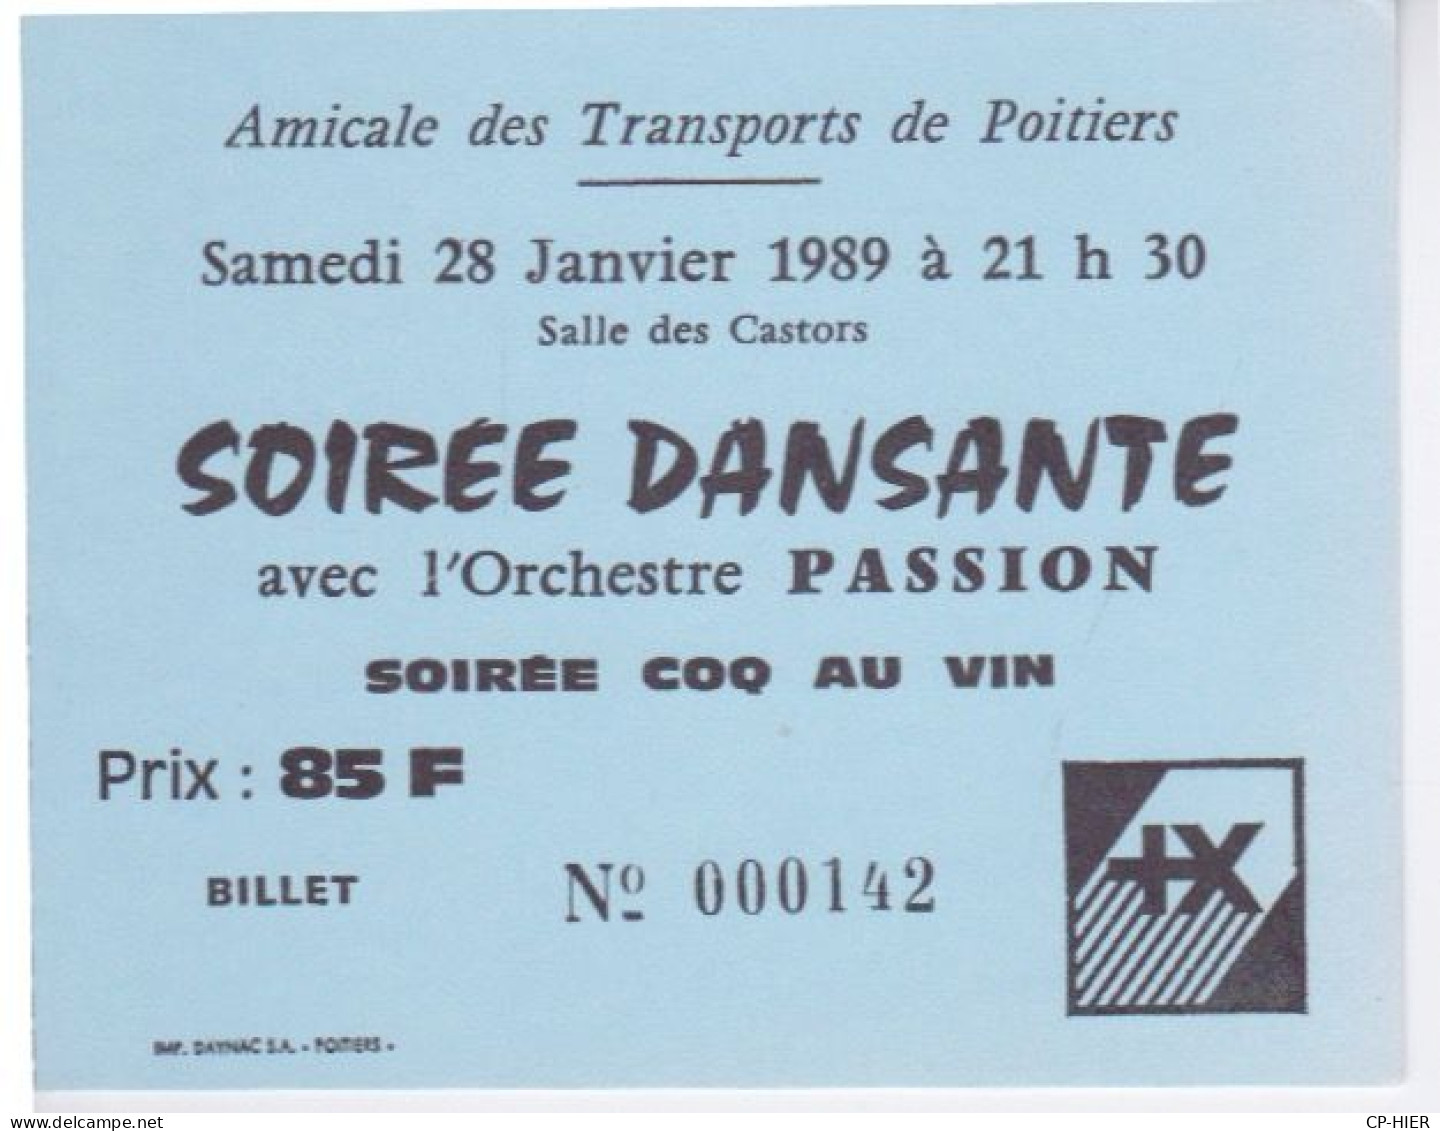 86 - POITIERS - AMICALE DES TRANSPORTS - SOIREE DANSANTE  -  ORCHESTRE PASSION - SOIREE COQ AU VIN SALLE CASTORS - Tickets - Entradas